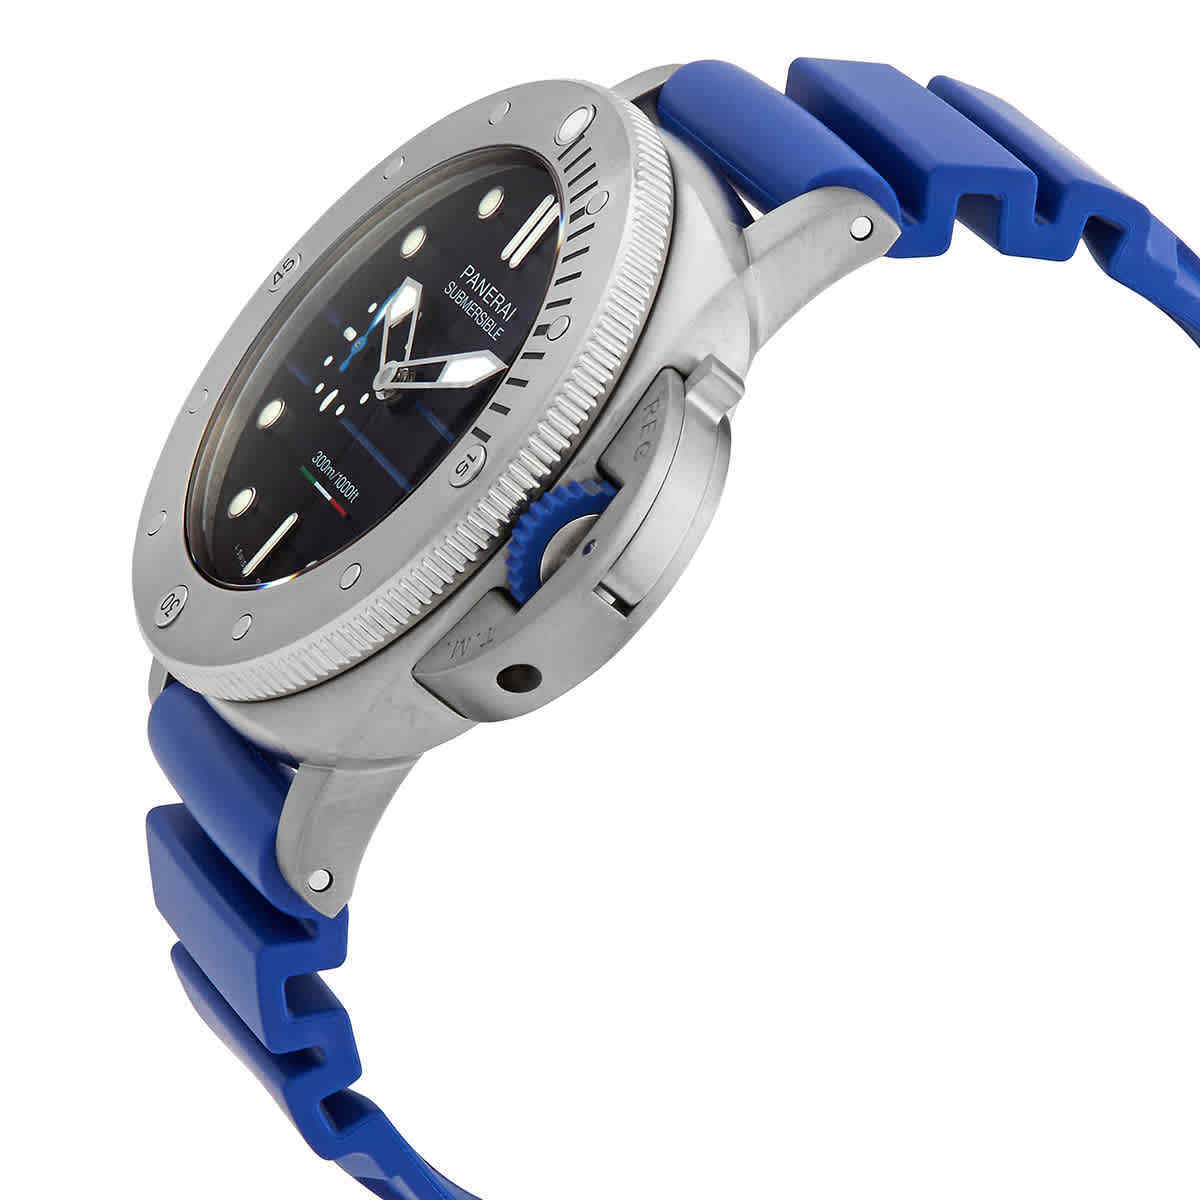 Panerai Paltrinieri Edition Limited Reloj para hombre con esfera negra y correa azul 47 PAM01162